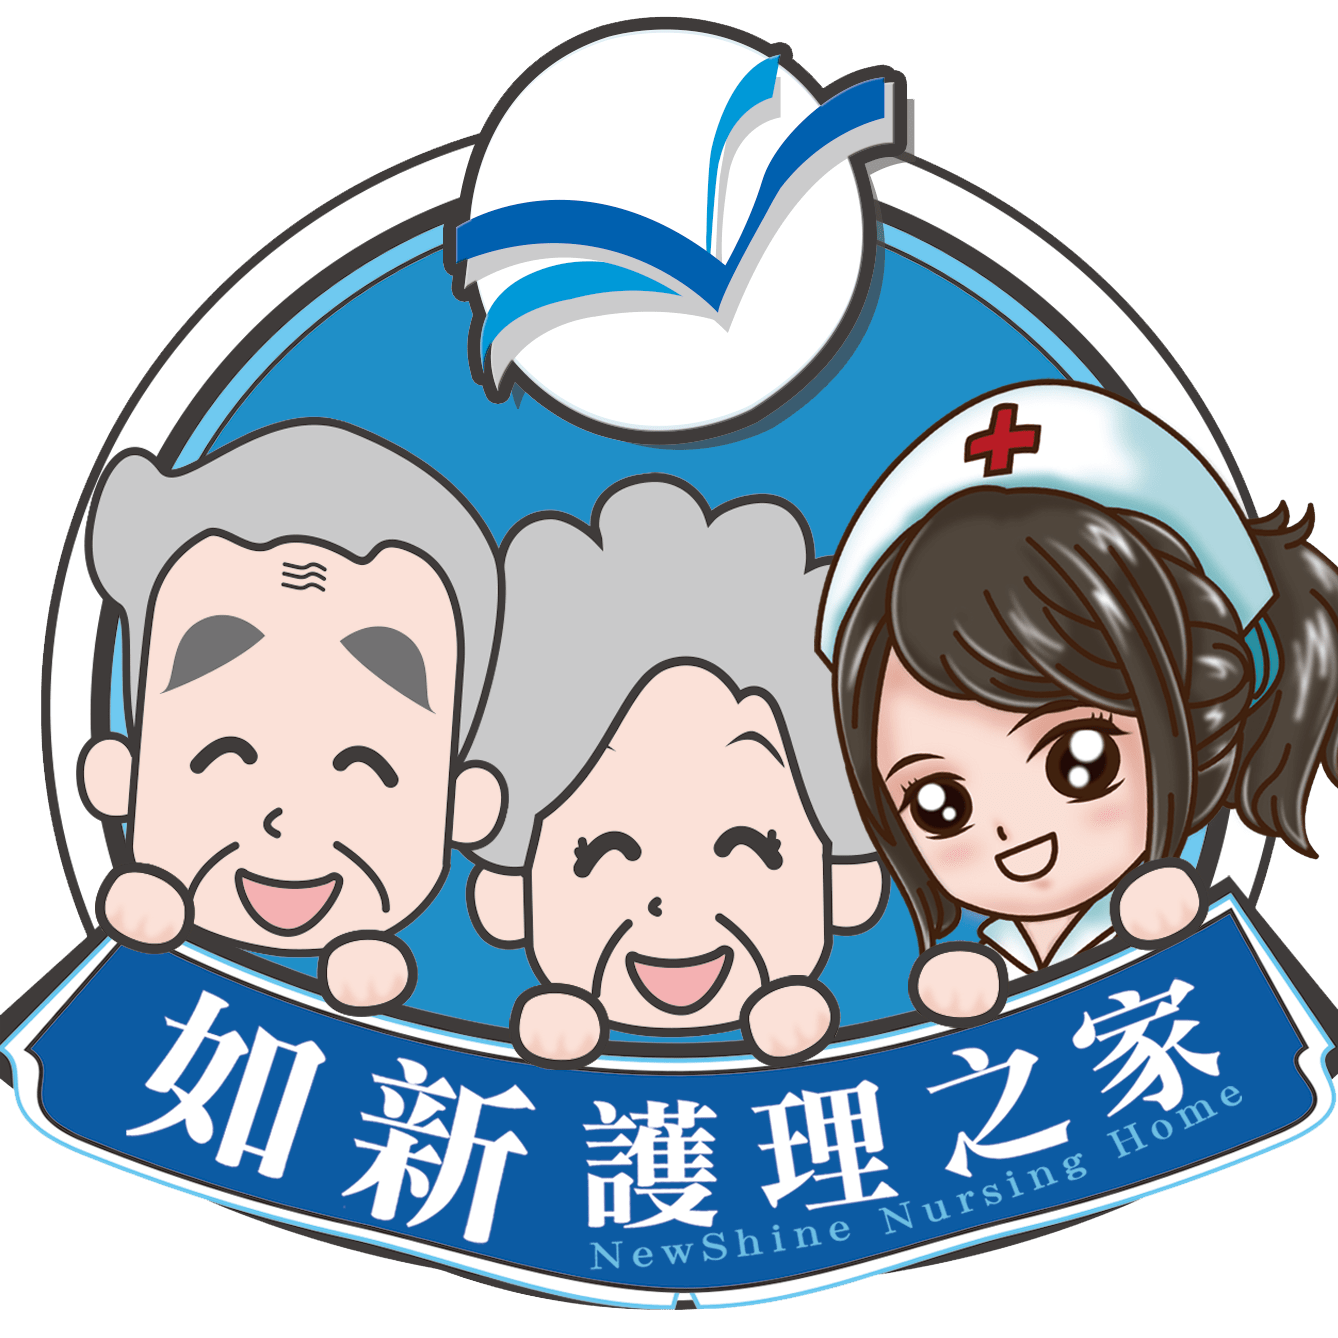 如新護理之家（台南市安平區） - 南部獲得高評價，最值得推薦的護理之家